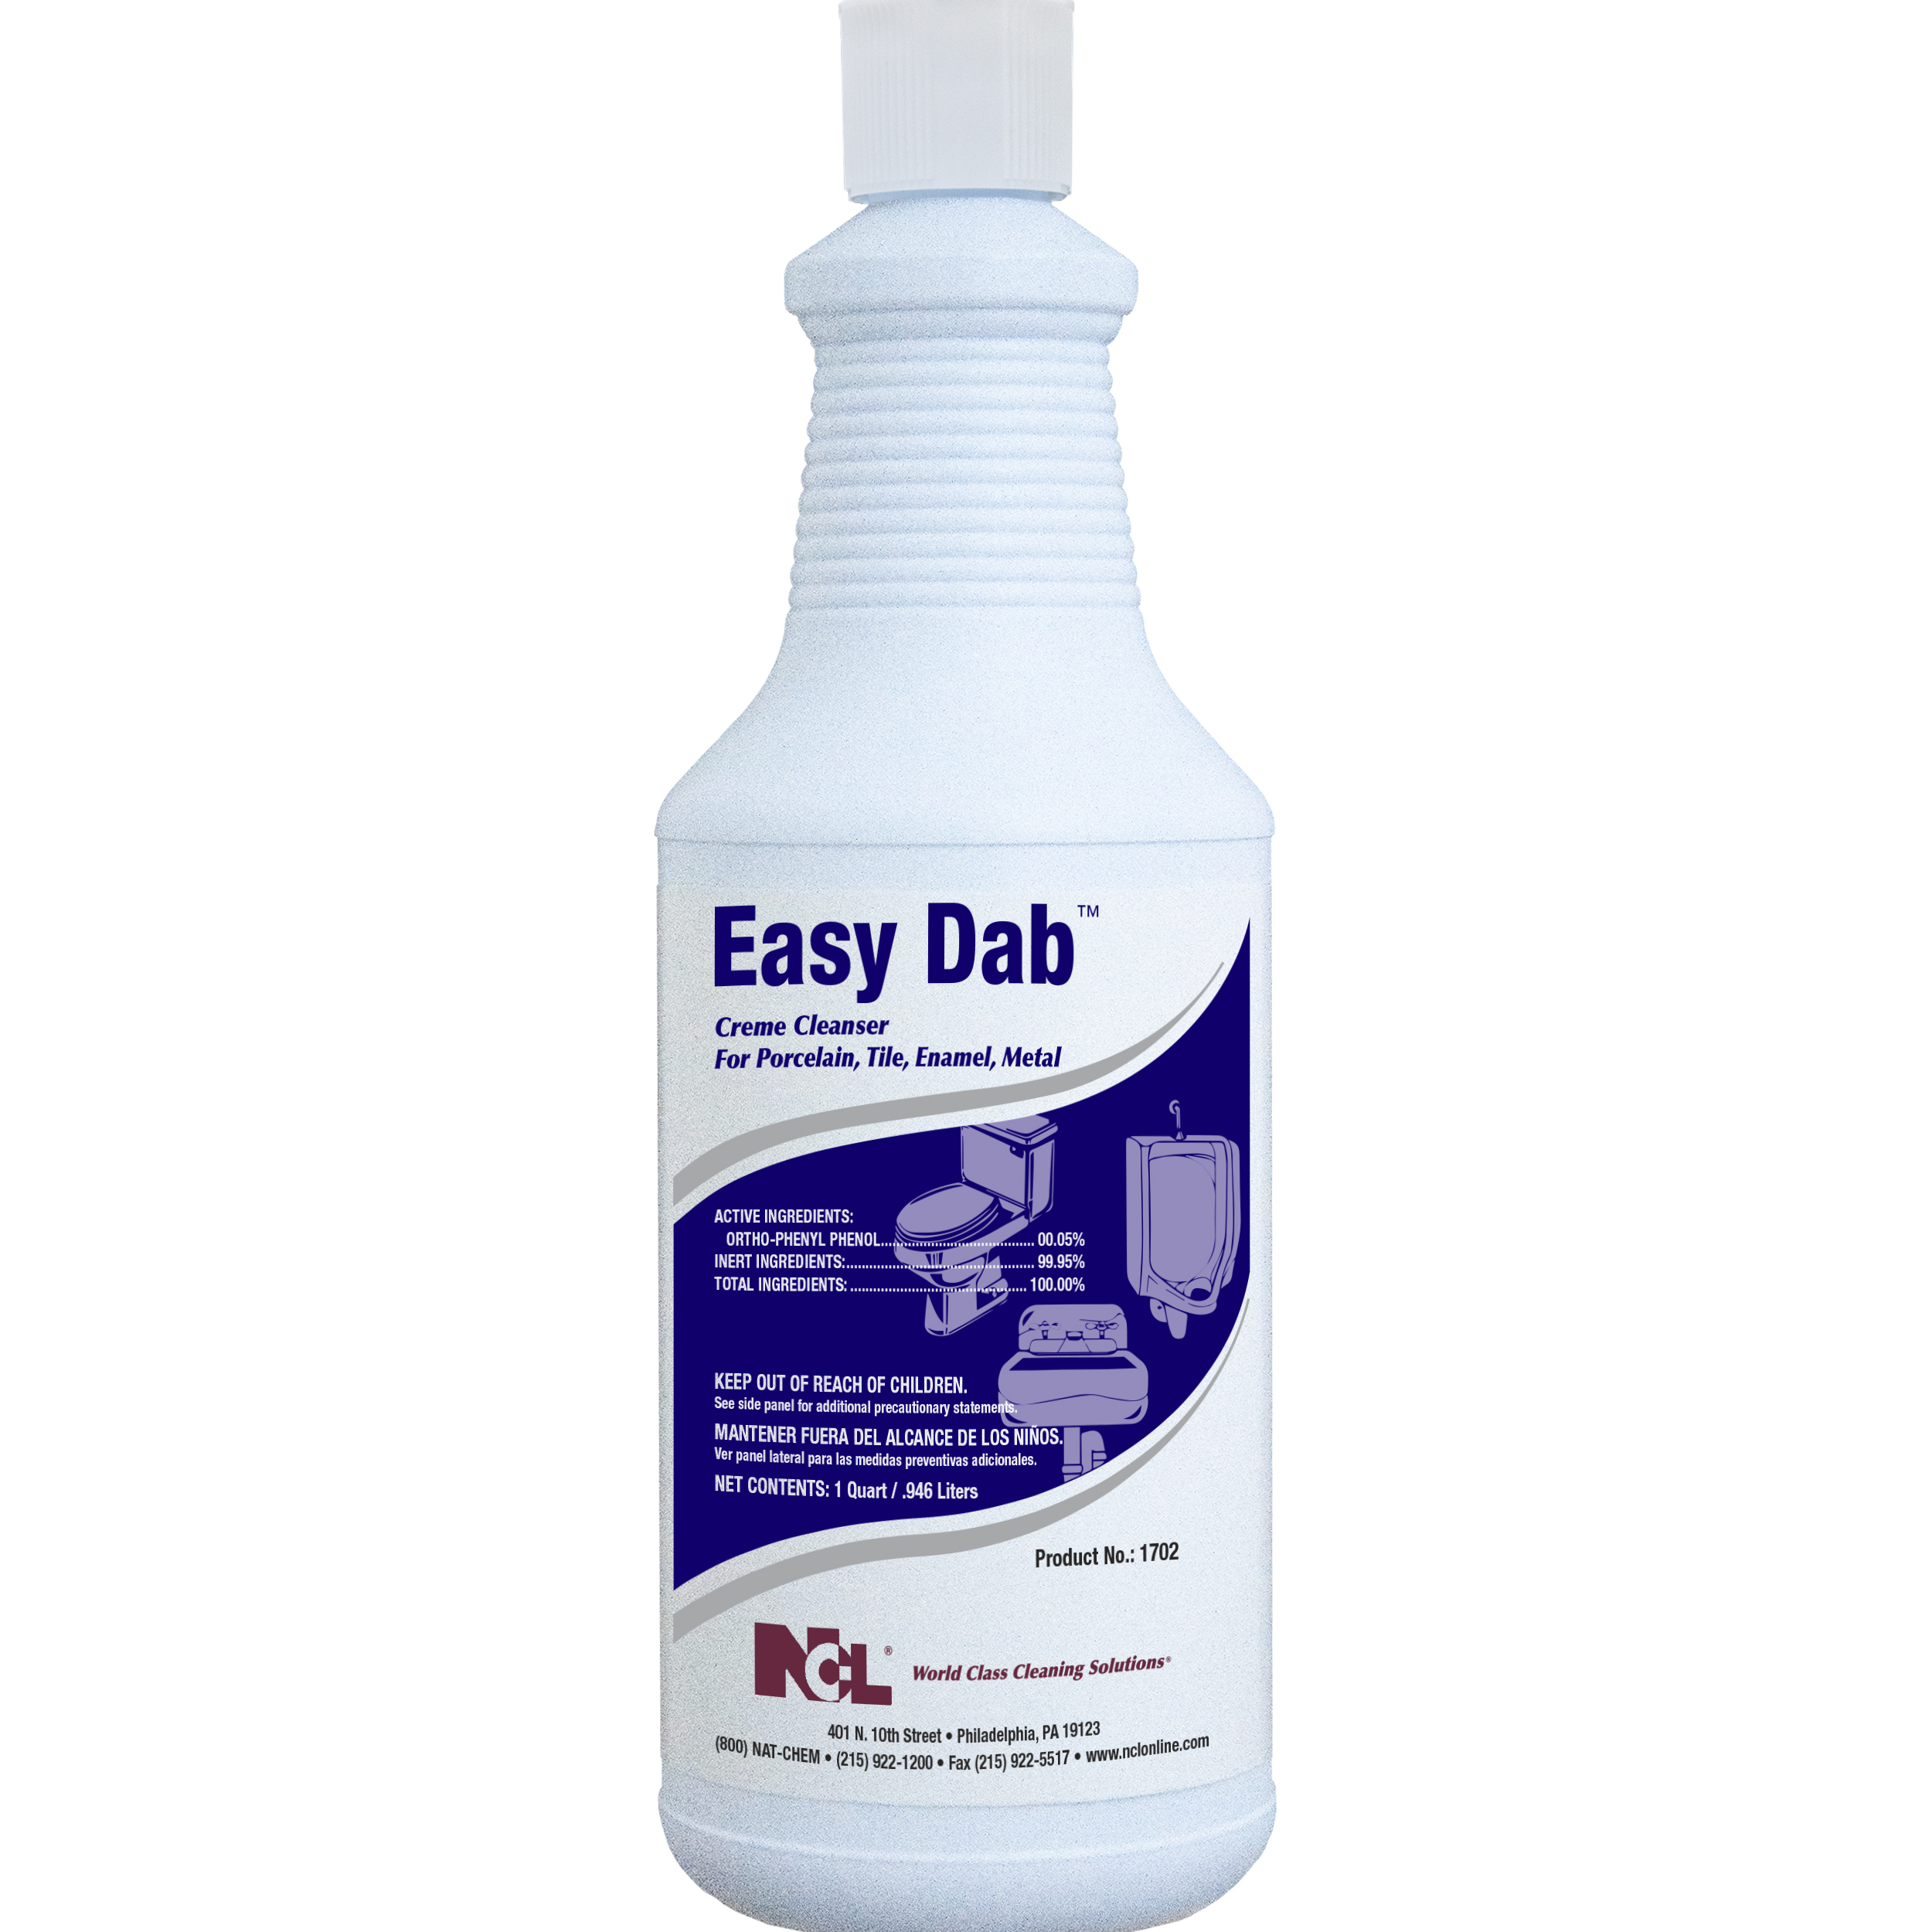  EASY DAB  Crème Cleanser 12/32 oz (1 Qt.) Case (NCL1702-45) 